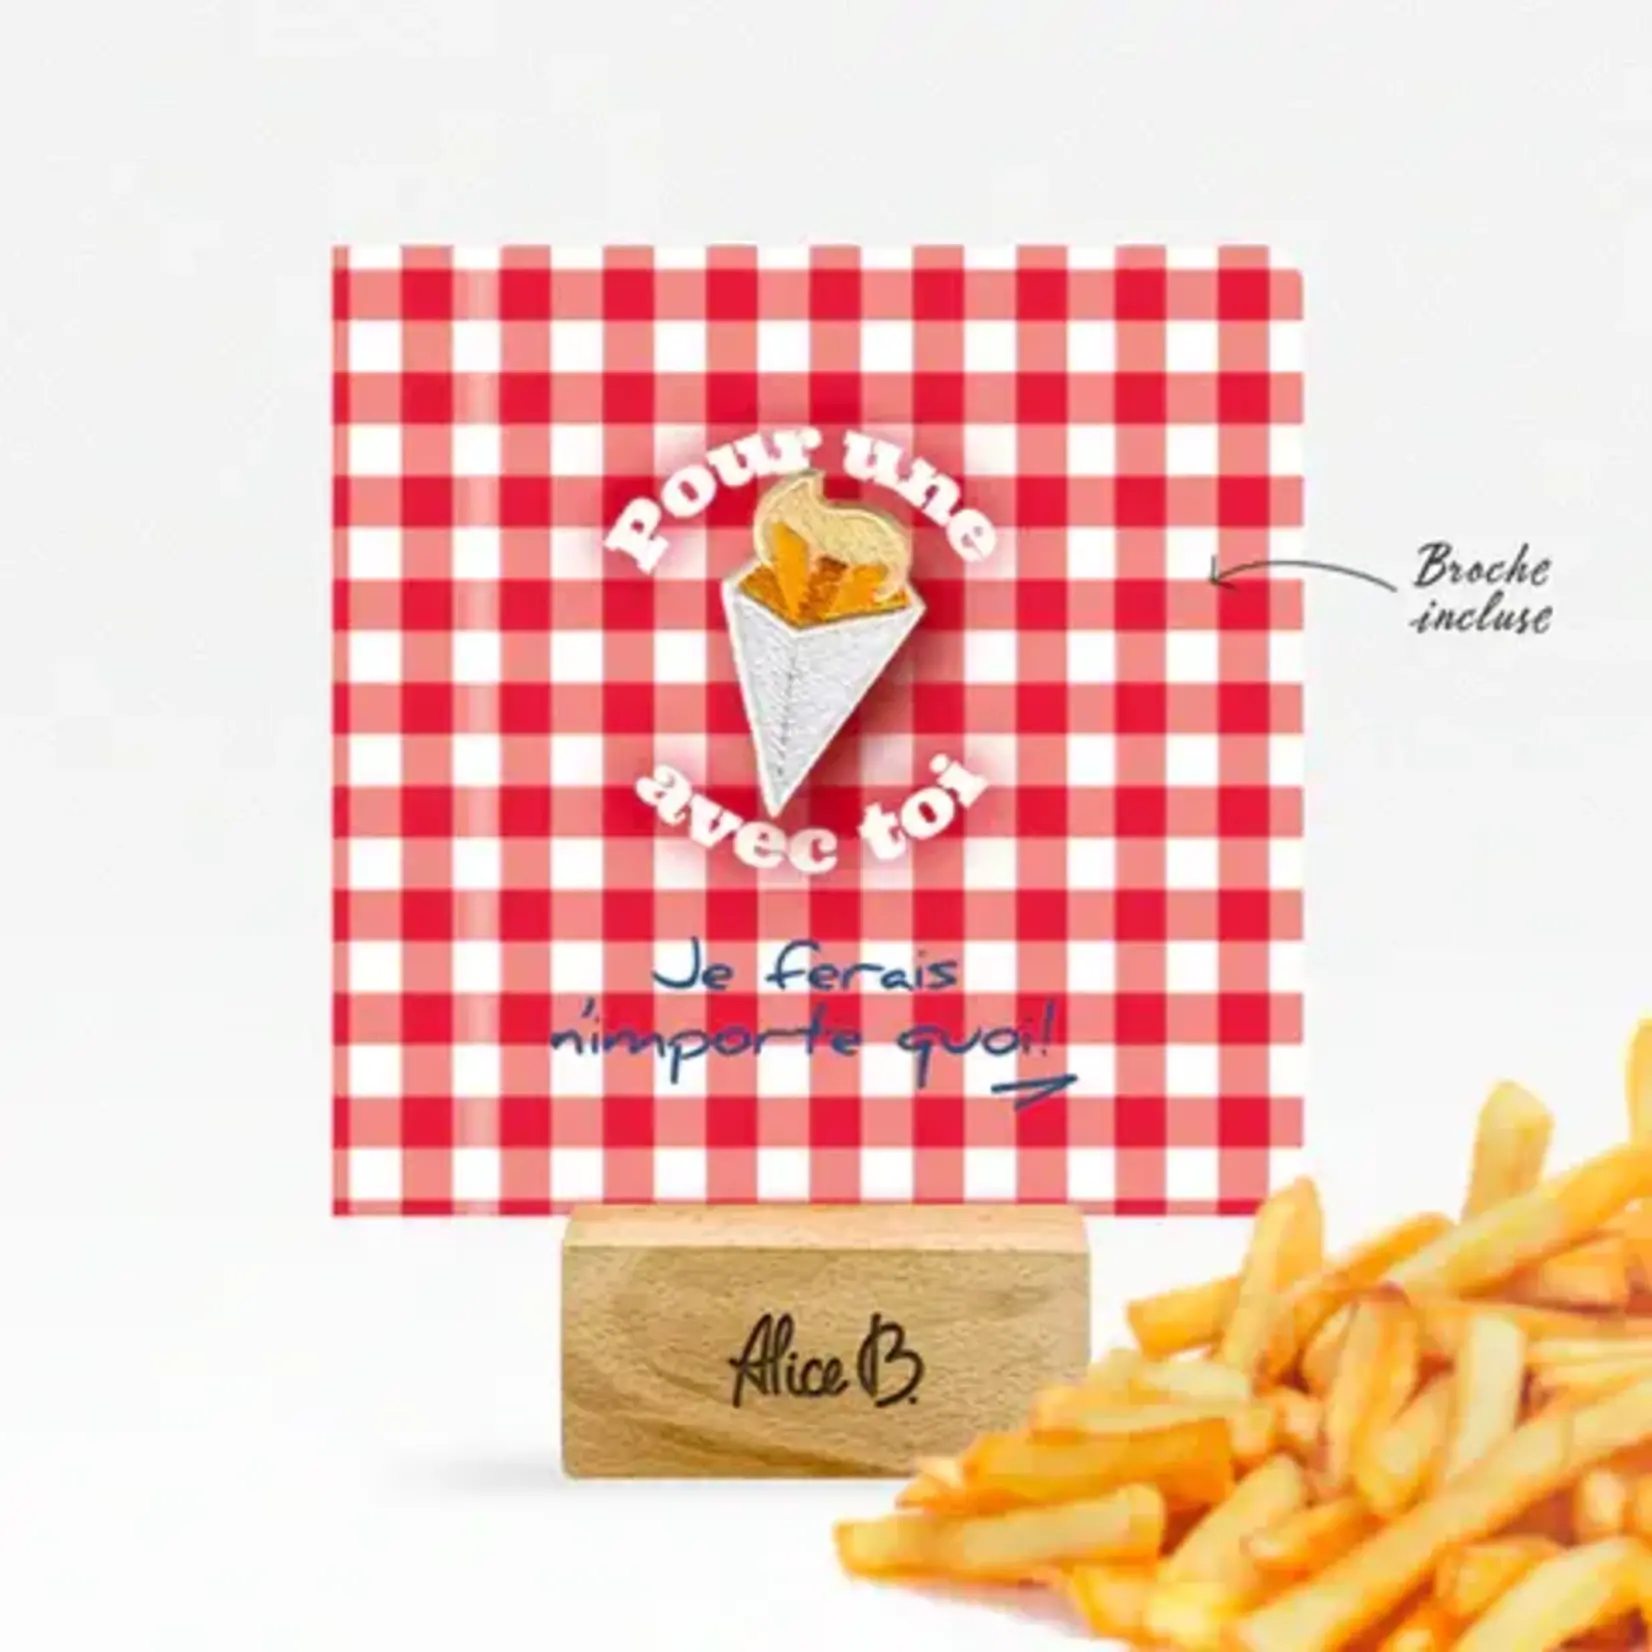 ALICE B. ALICE B - Carte  Pour une frite avec toi + broche